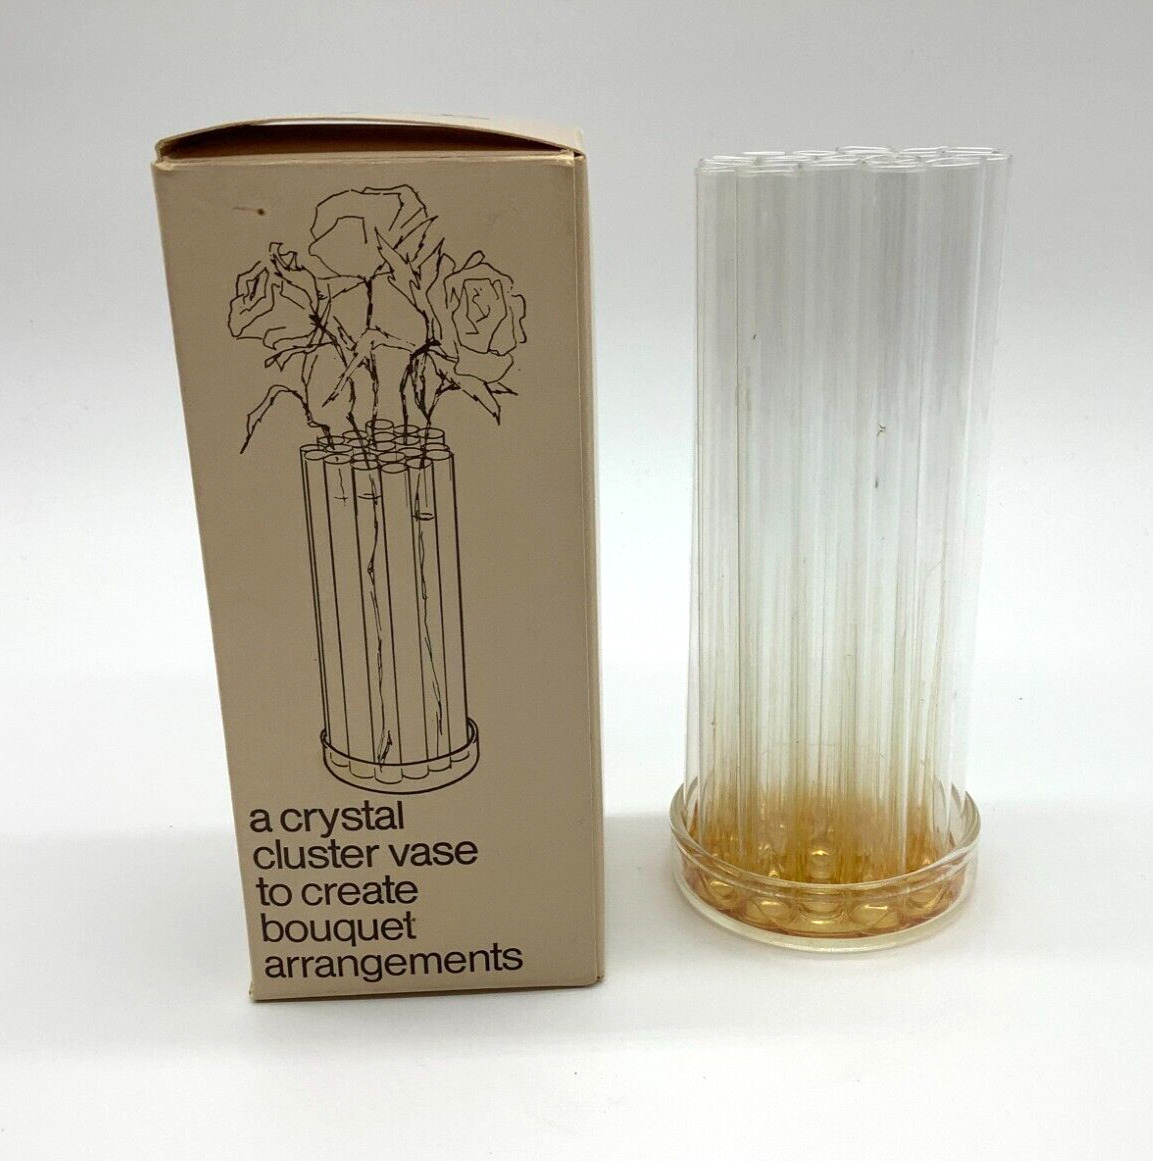 GEORG JENSEN “The Flower Put” Crystal Cluster Vase Vintage 1972